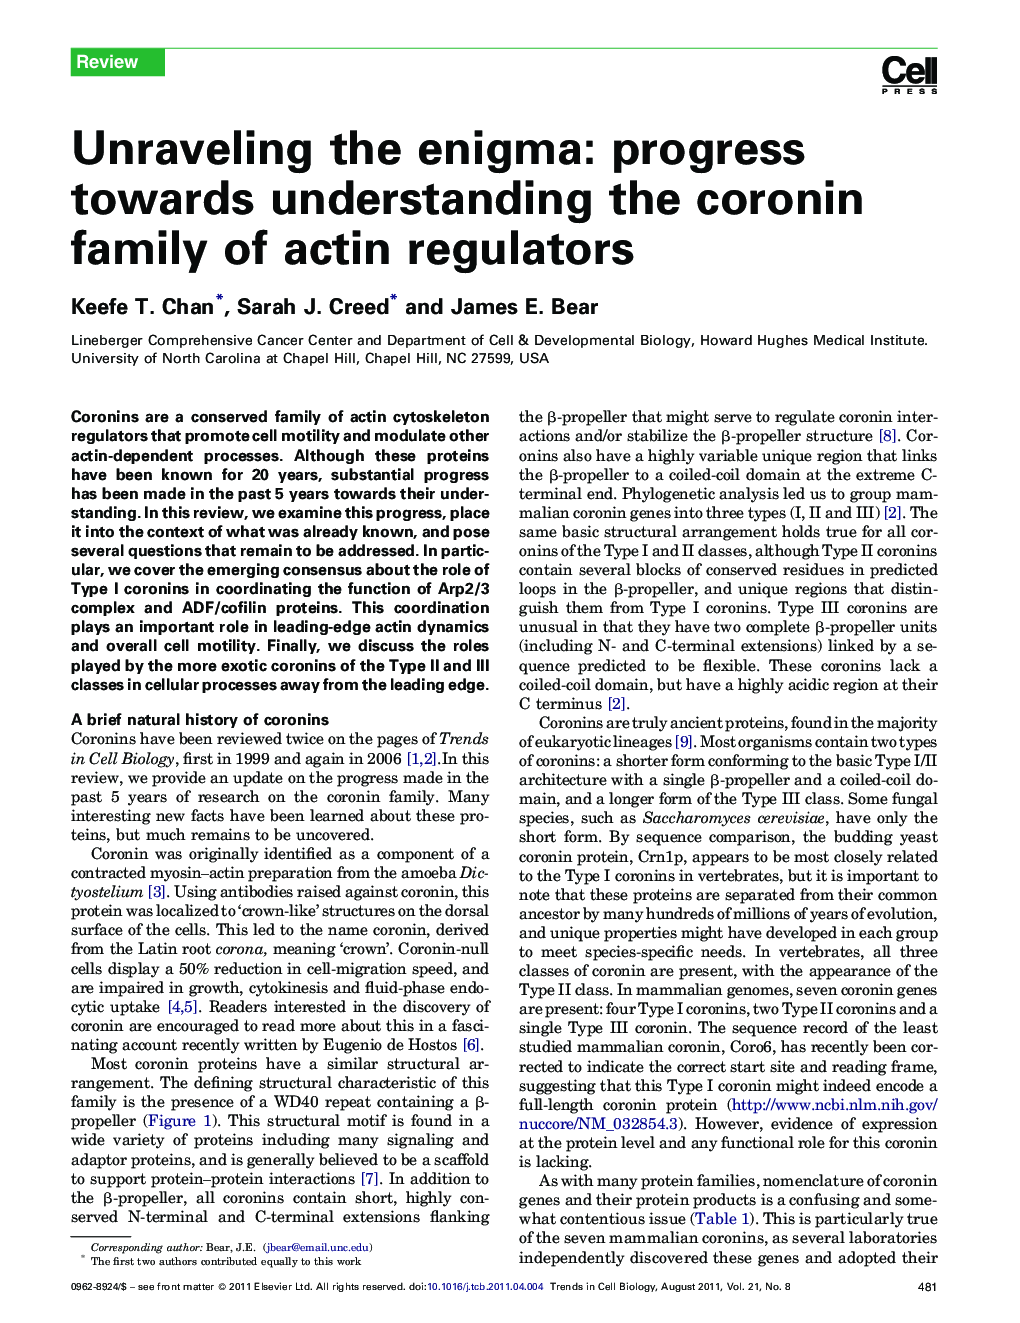 Unraveling the enigma: progress towards understanding the coronin family of actin regulators